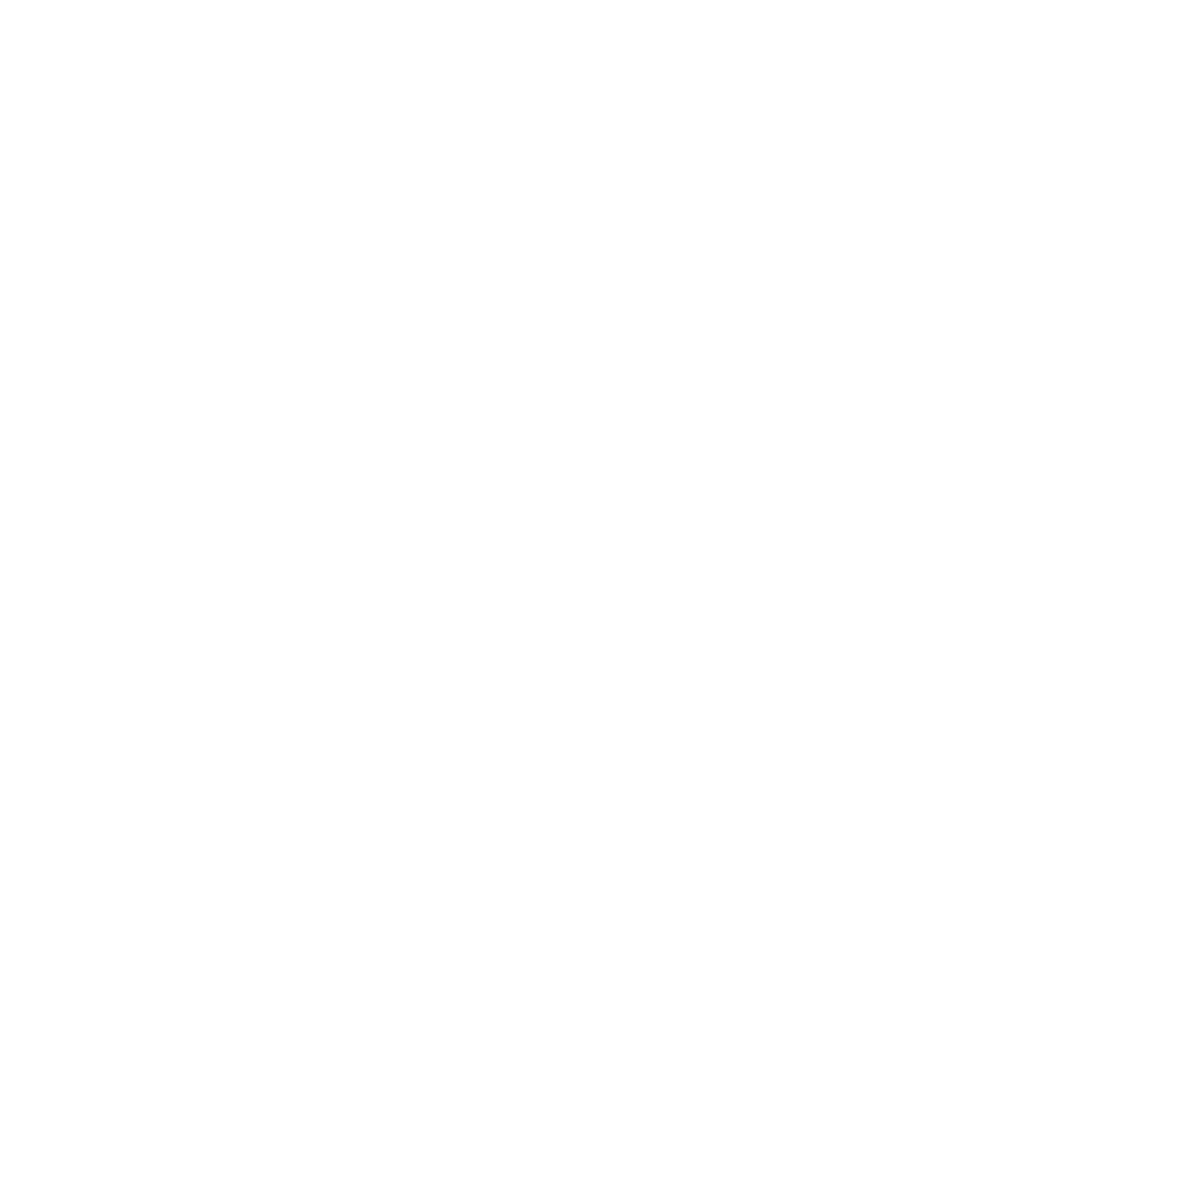 Alabama Youth Dept